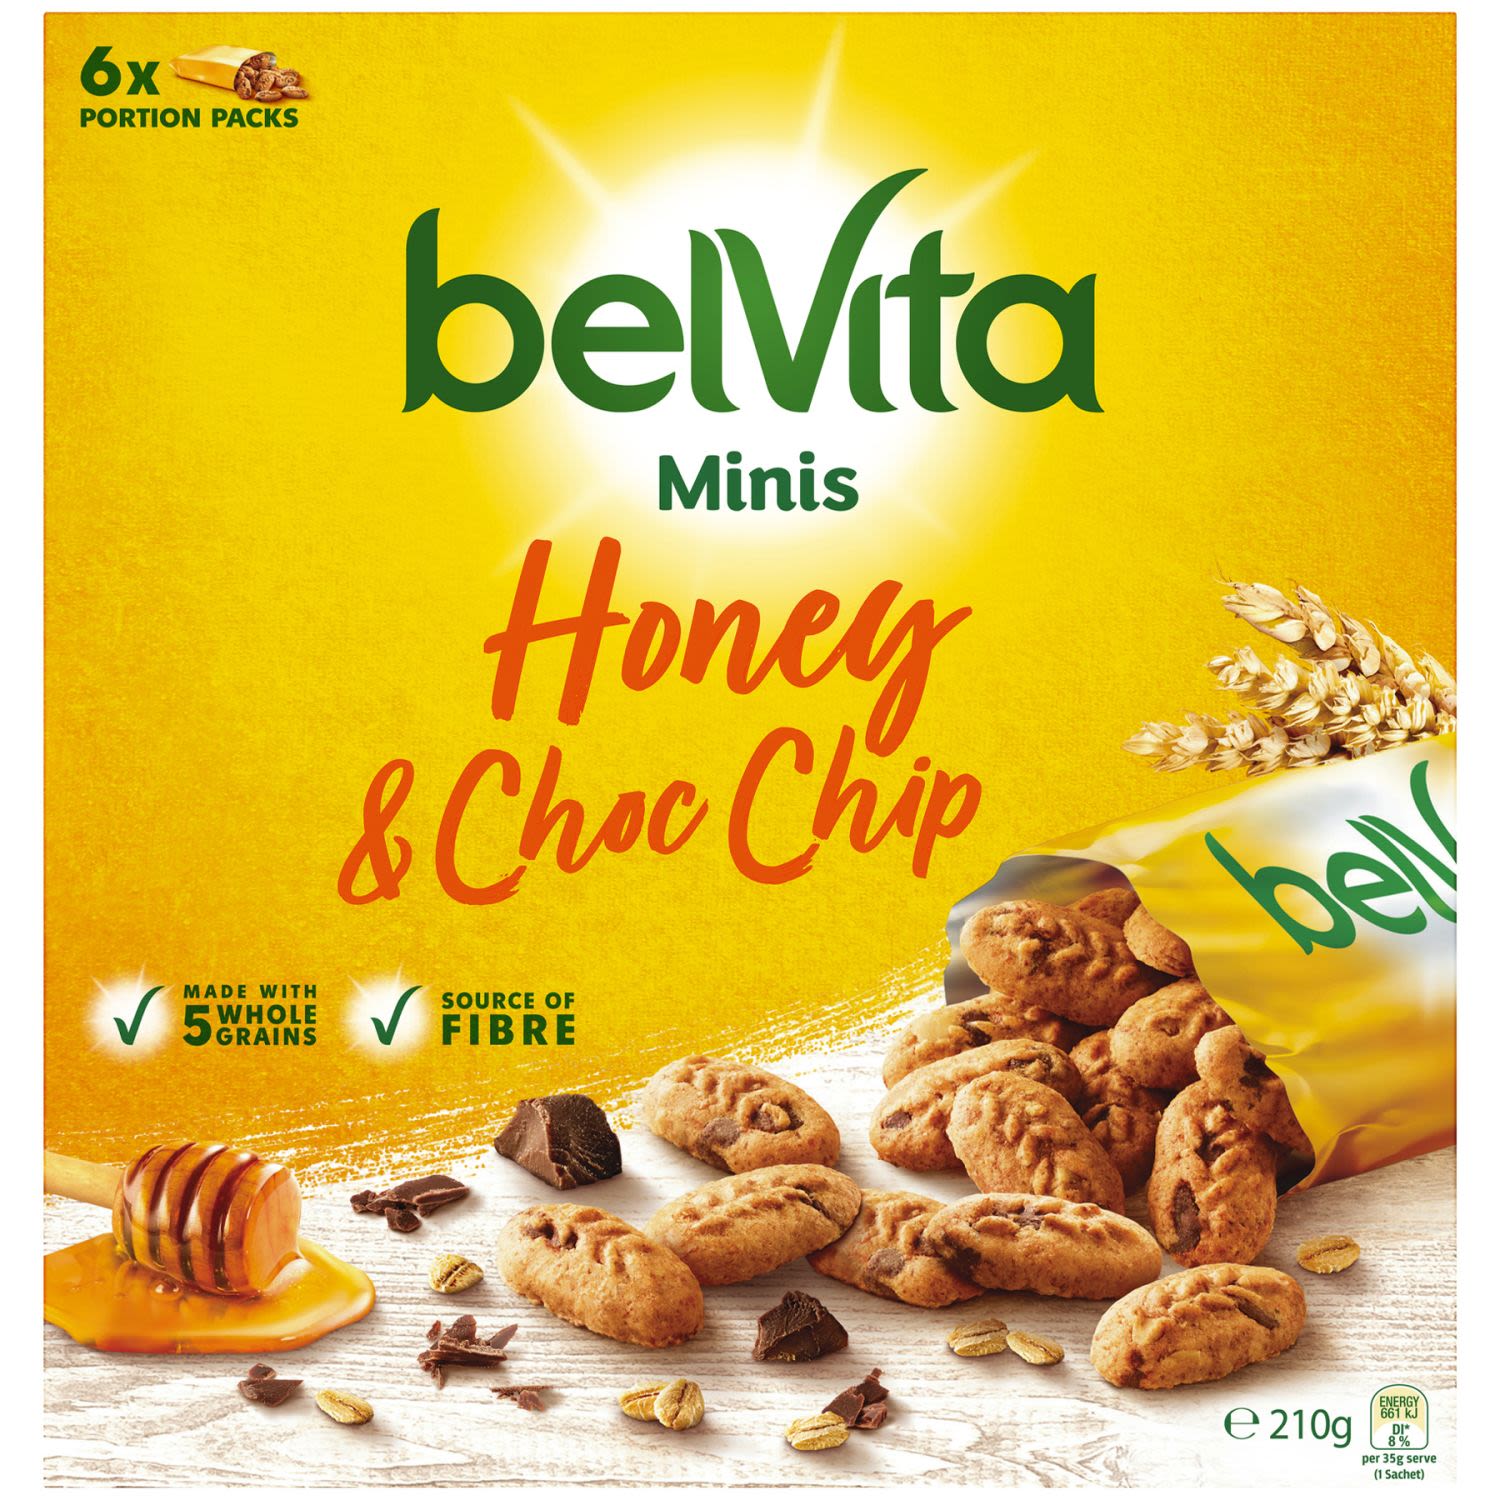 Belvita Minis Honey & Chocolate Chip, 6 Each